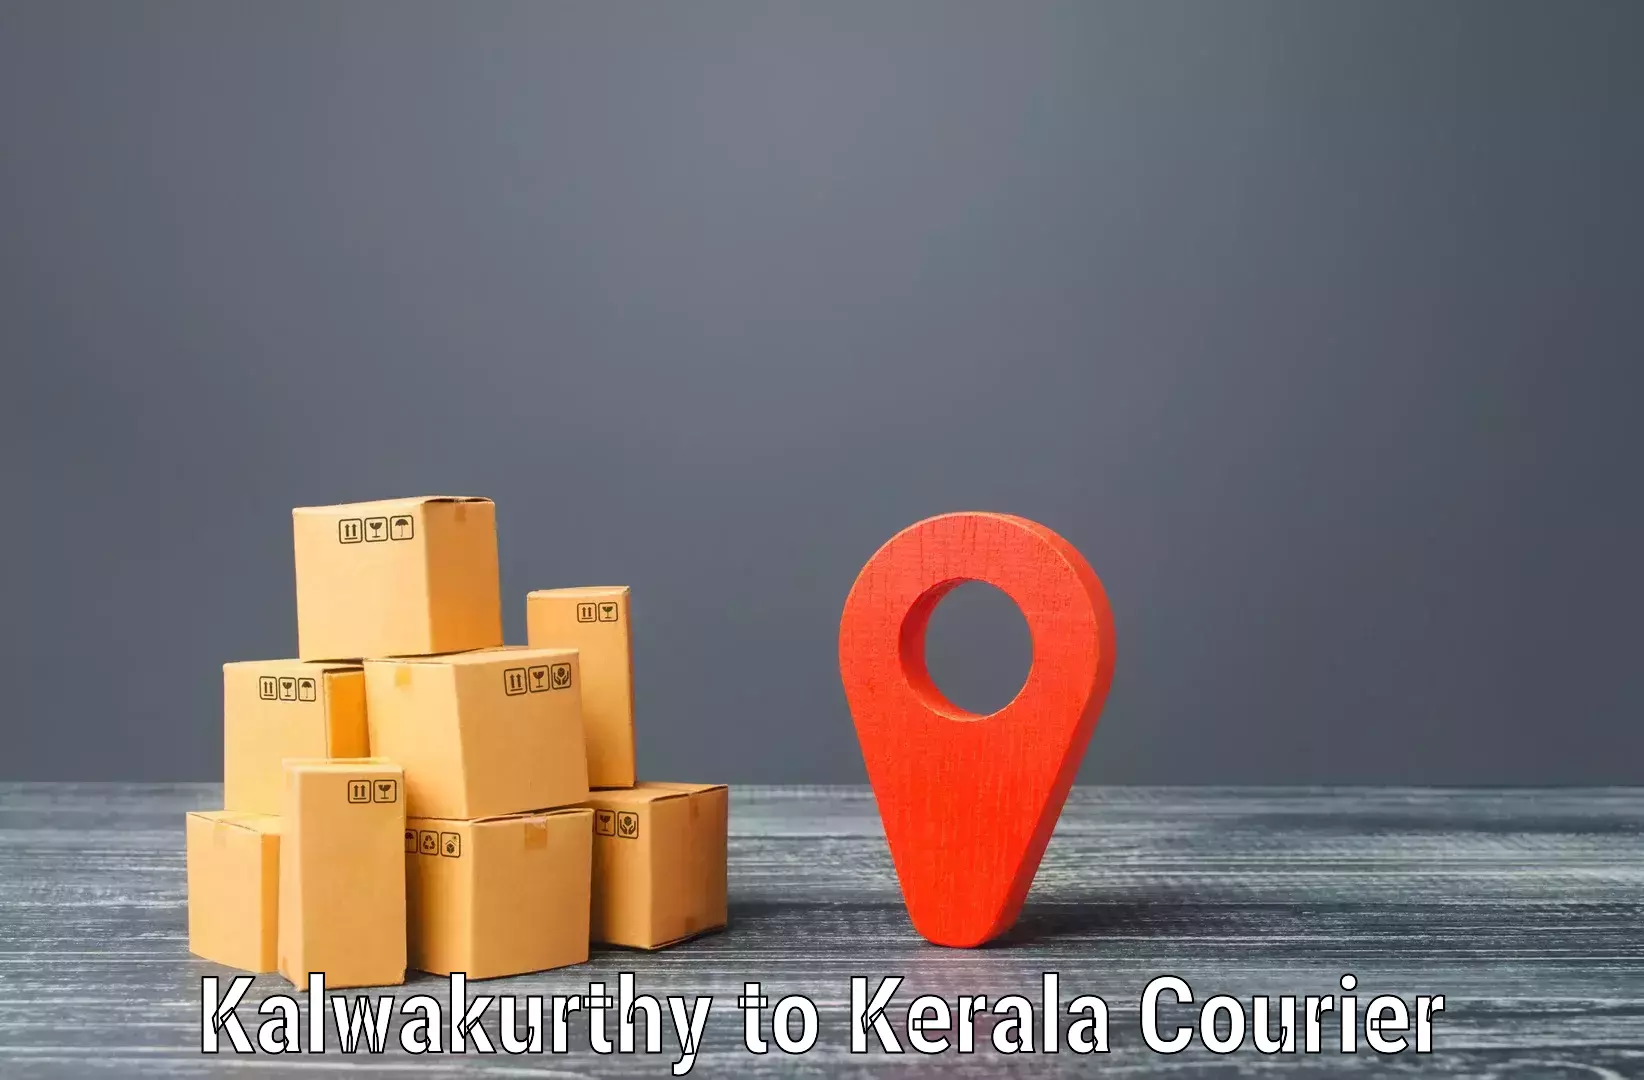 Courier service partnerships Kalwakurthy to Mundakayam